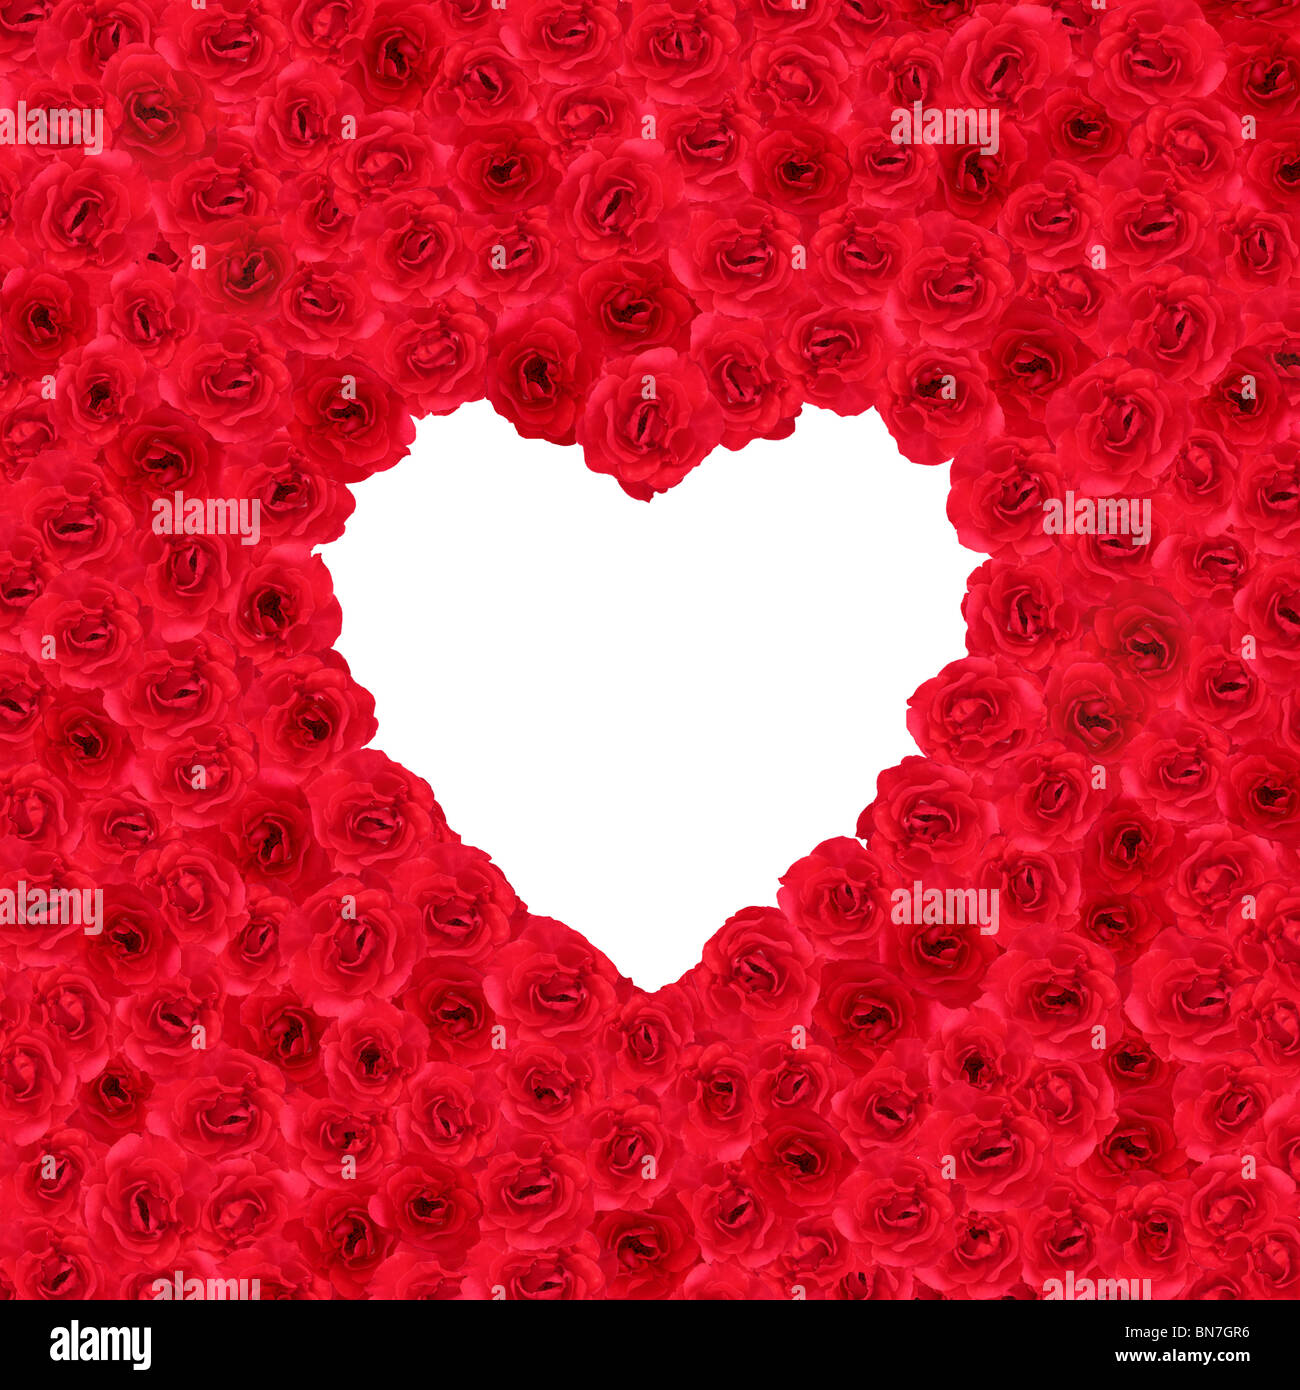 Viele rote Rosen bilden eine Herzform in ein quadratisches format Stockfoto